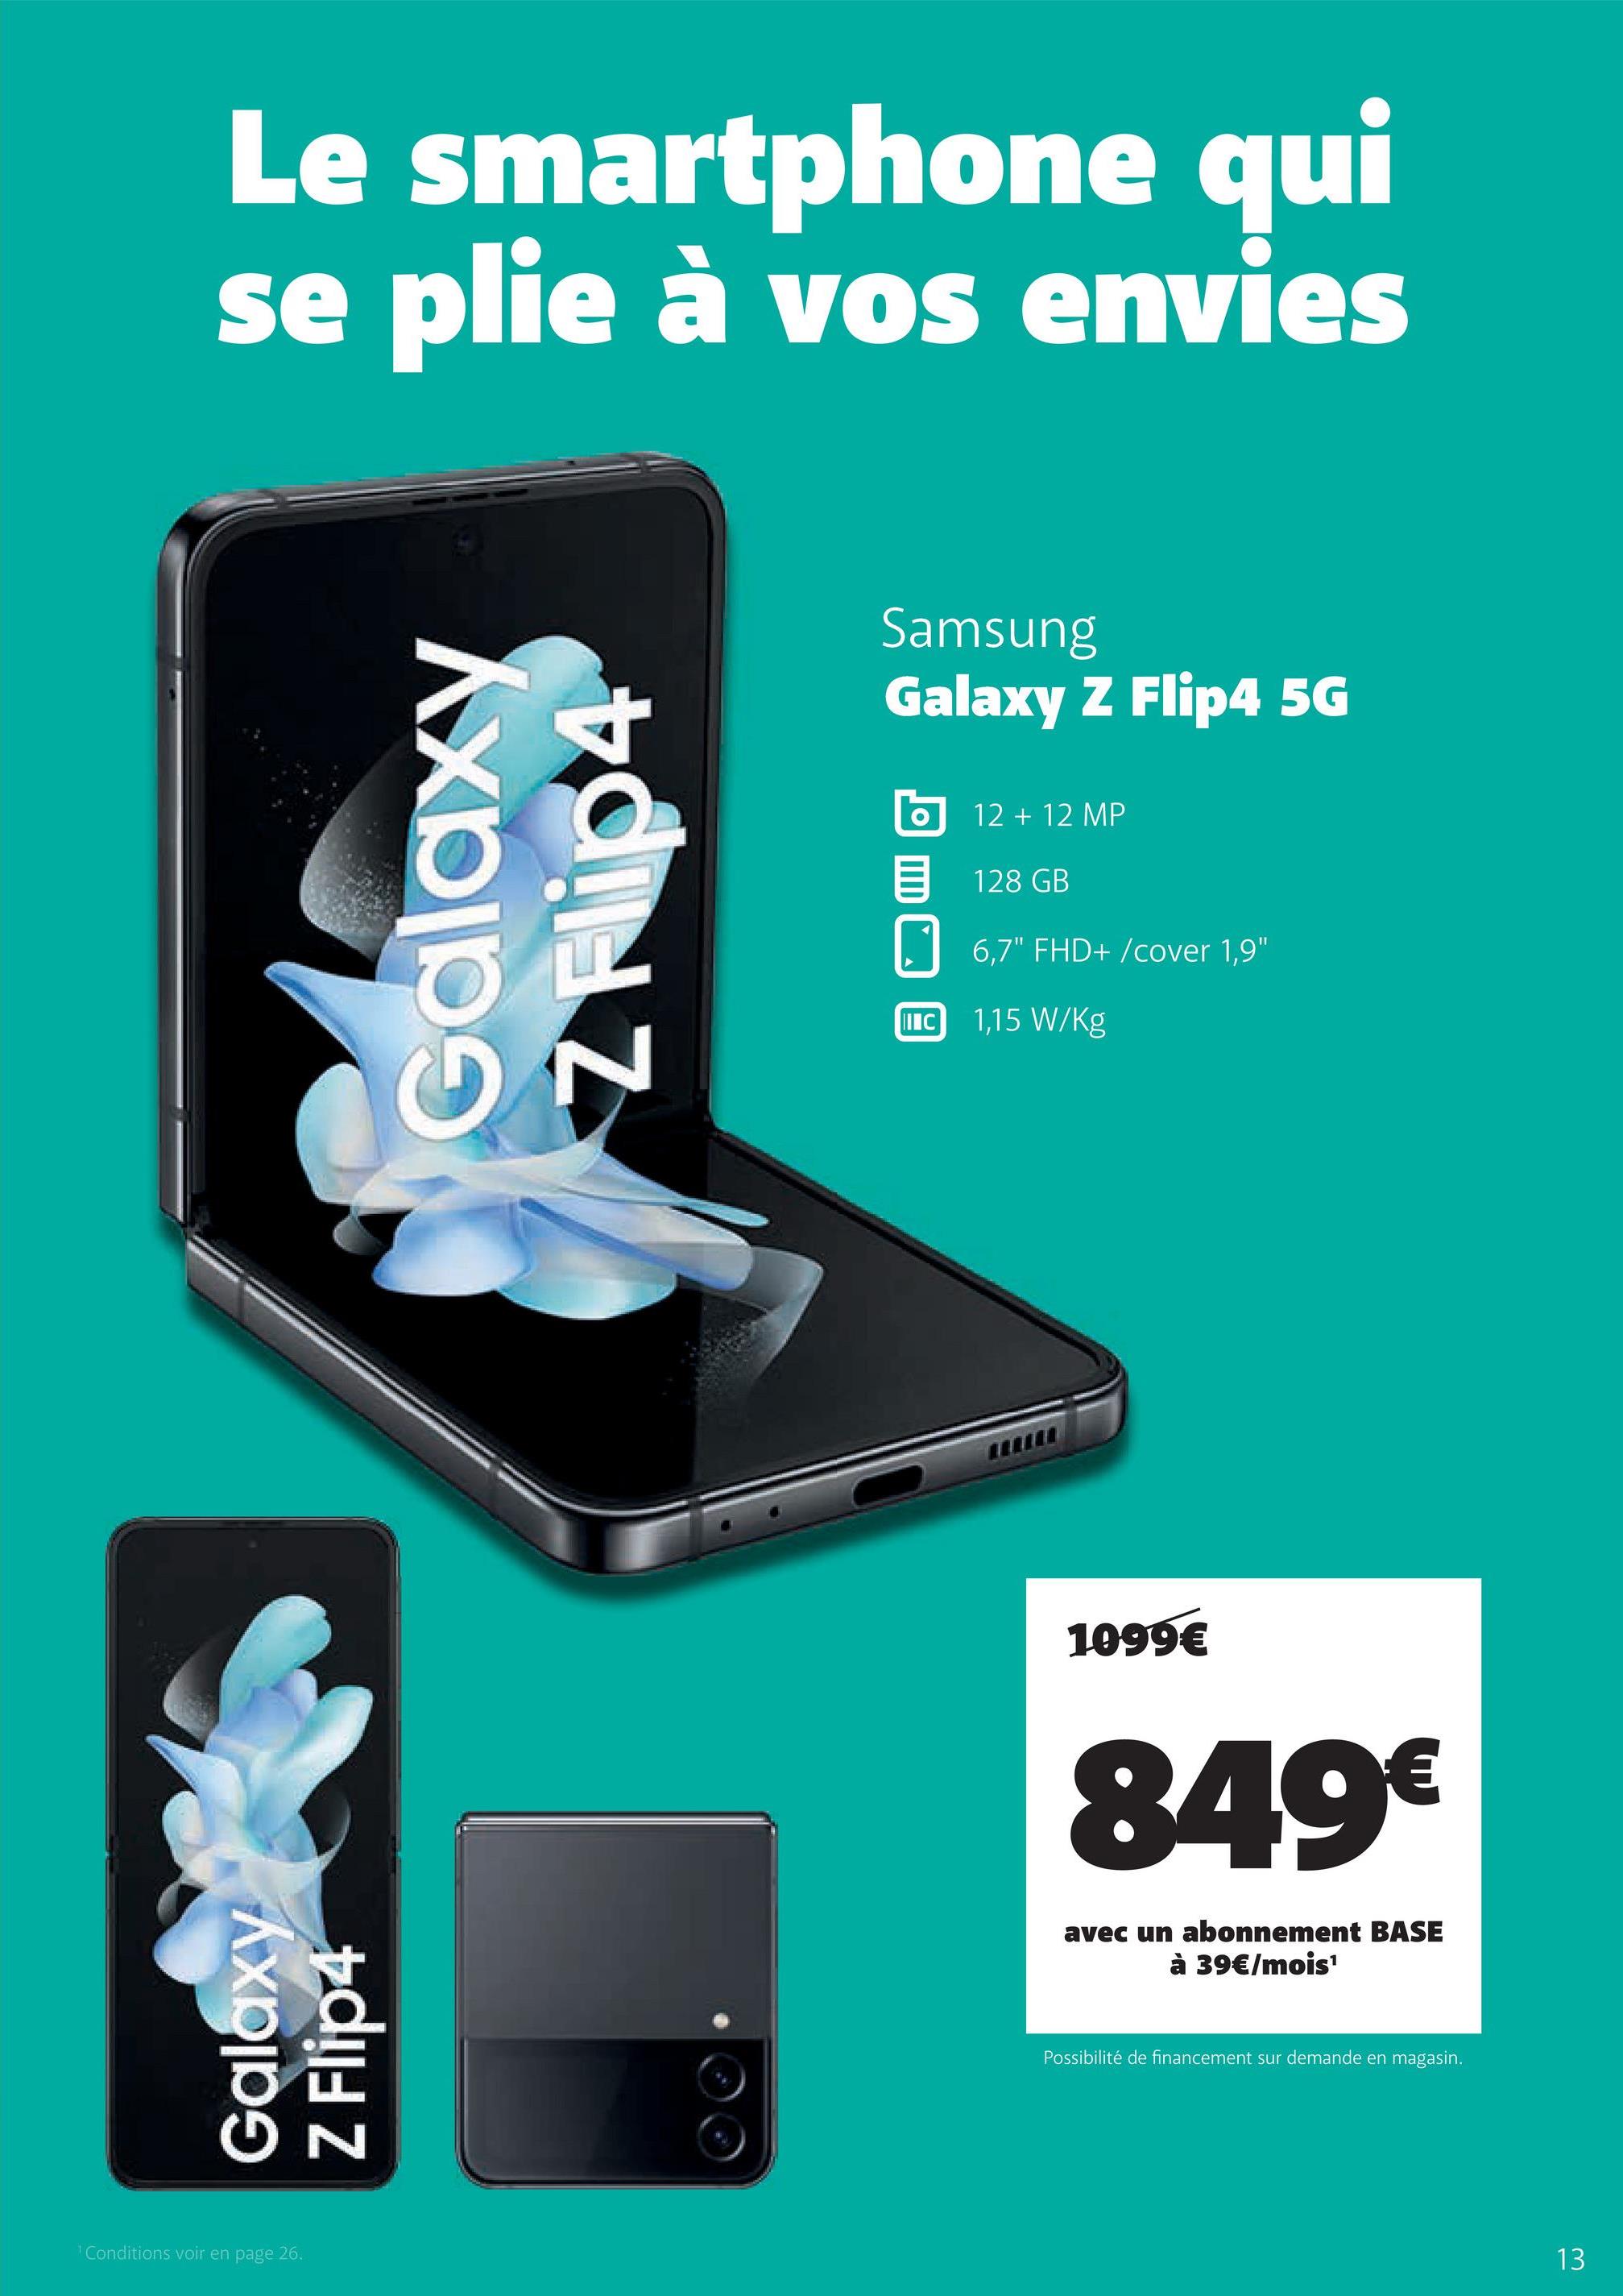 Le smartphone qui
se plie à vos envies
Galaxy
Z Flip4
¹ Conditions voir en page 26.
Galaxy
N
Samsung
Galaxy Z Flip4 5G
IIIC
12 + 12 MP
128 GB
6,7" FHD+/cover 1,9"
1,15 W/kg
1099€
849€
avec un abonnement BASE
à 39€/mois¹
Possibilité de financement sur demande en magasin.
13